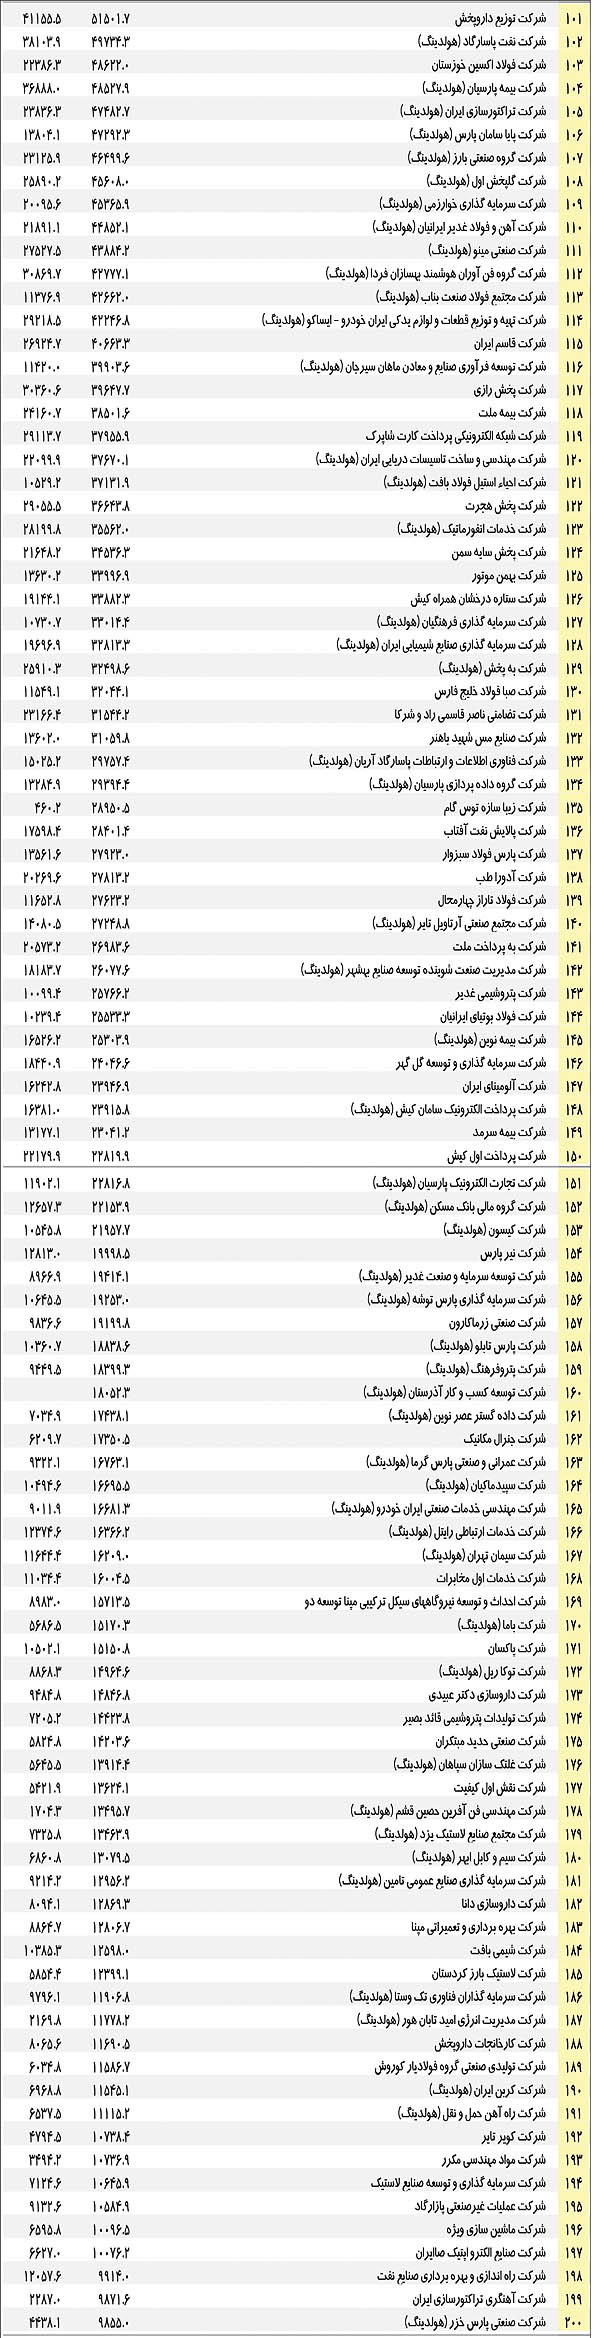 لیست 500 شرکت برتر ایران پردرآمدترین شرکت های ایران بهترین شرکتهای ایران بزرگترین شرکتهای ایران بزرگ ترین شرکت بورسی برترین شرکتهای بورس برترین شرکتهای ایران برترین شرکت های خصوصی ایران 100 شرکت برتر